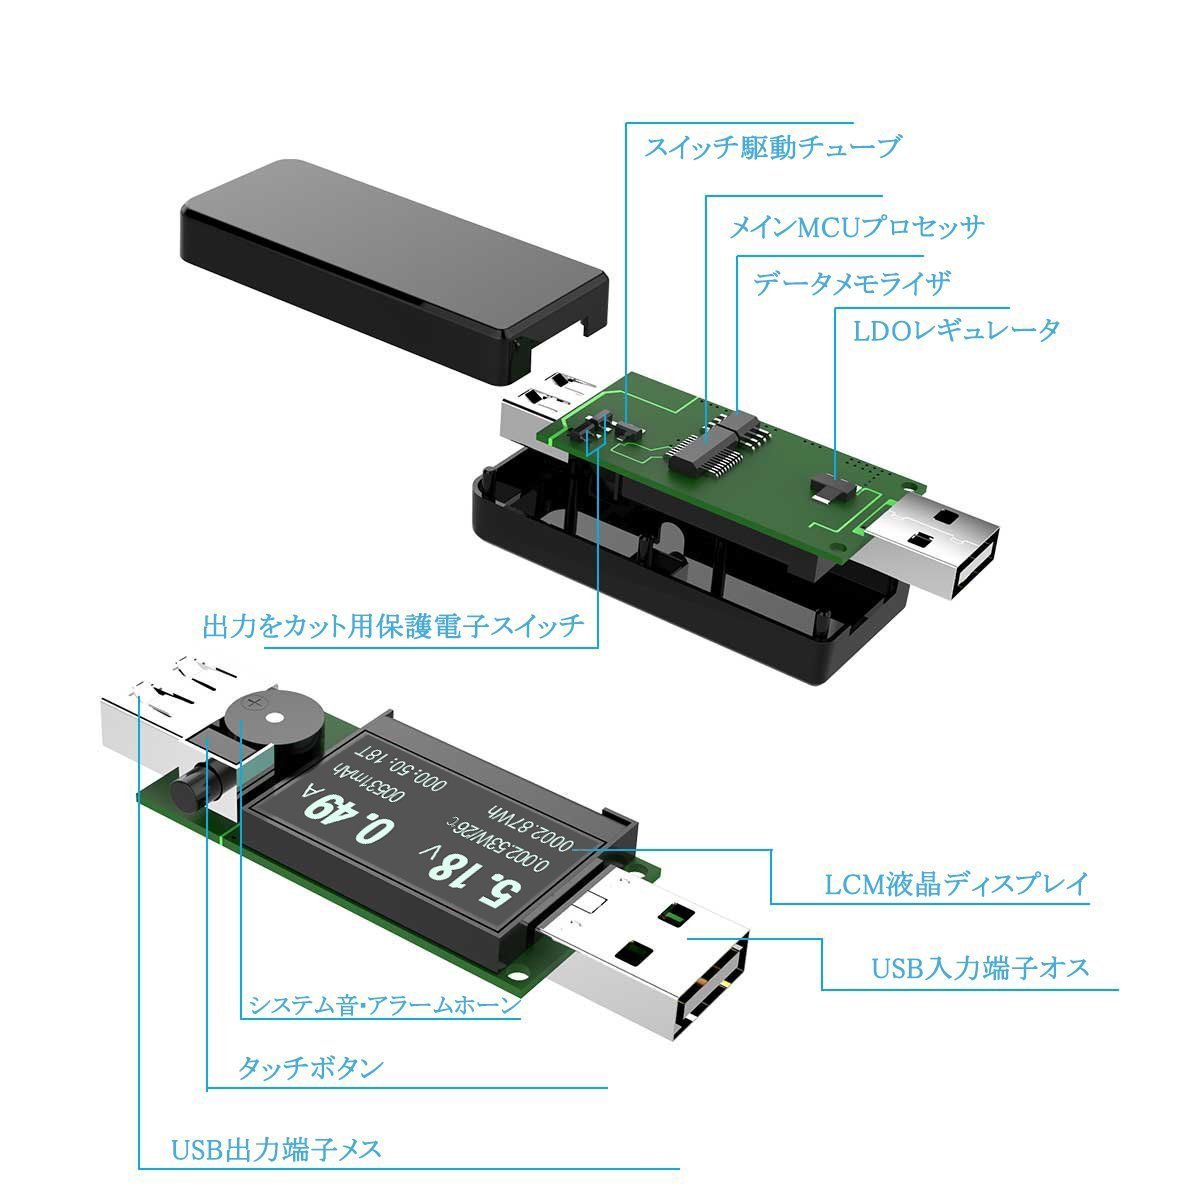 COOWOO USB電流電圧テスター チェッカー 3-30V/0-5.1A 急速充電QC2.0/QC3.0/MTK-PE/iphone2.4Aなど対応【日本語説明書付き＆12月保障】